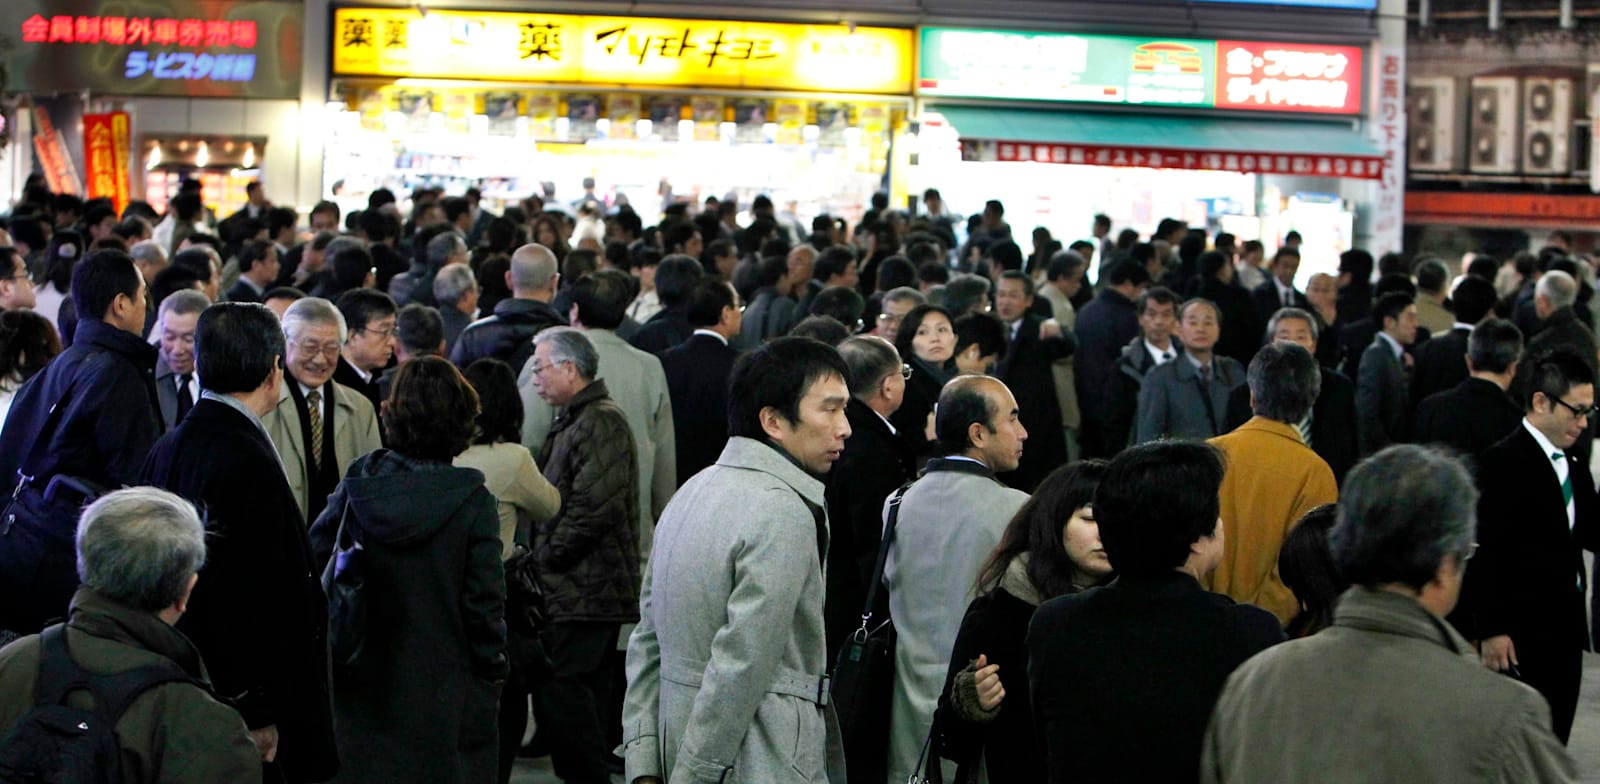 עובדי משרדים במרכז טוקיו בדרכם לתחנת הרכבת בתום  יום עבודה / צילום: Associated Press, Shizuo Kambayashi